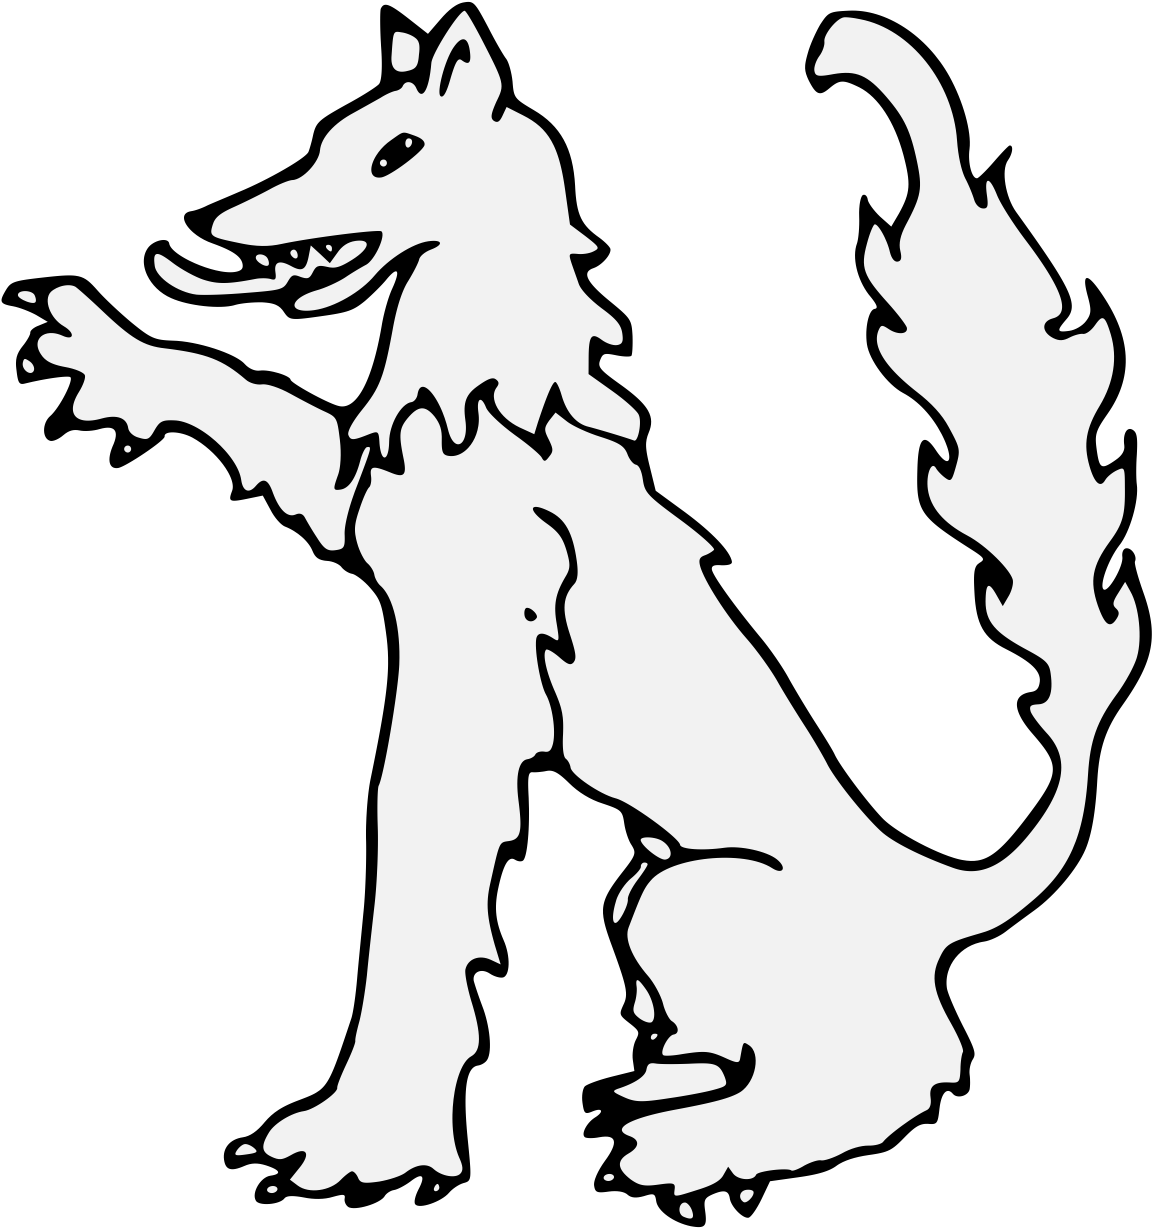 Wolf Sejant Dexter Paw Raised - Line Art (1181x1293)